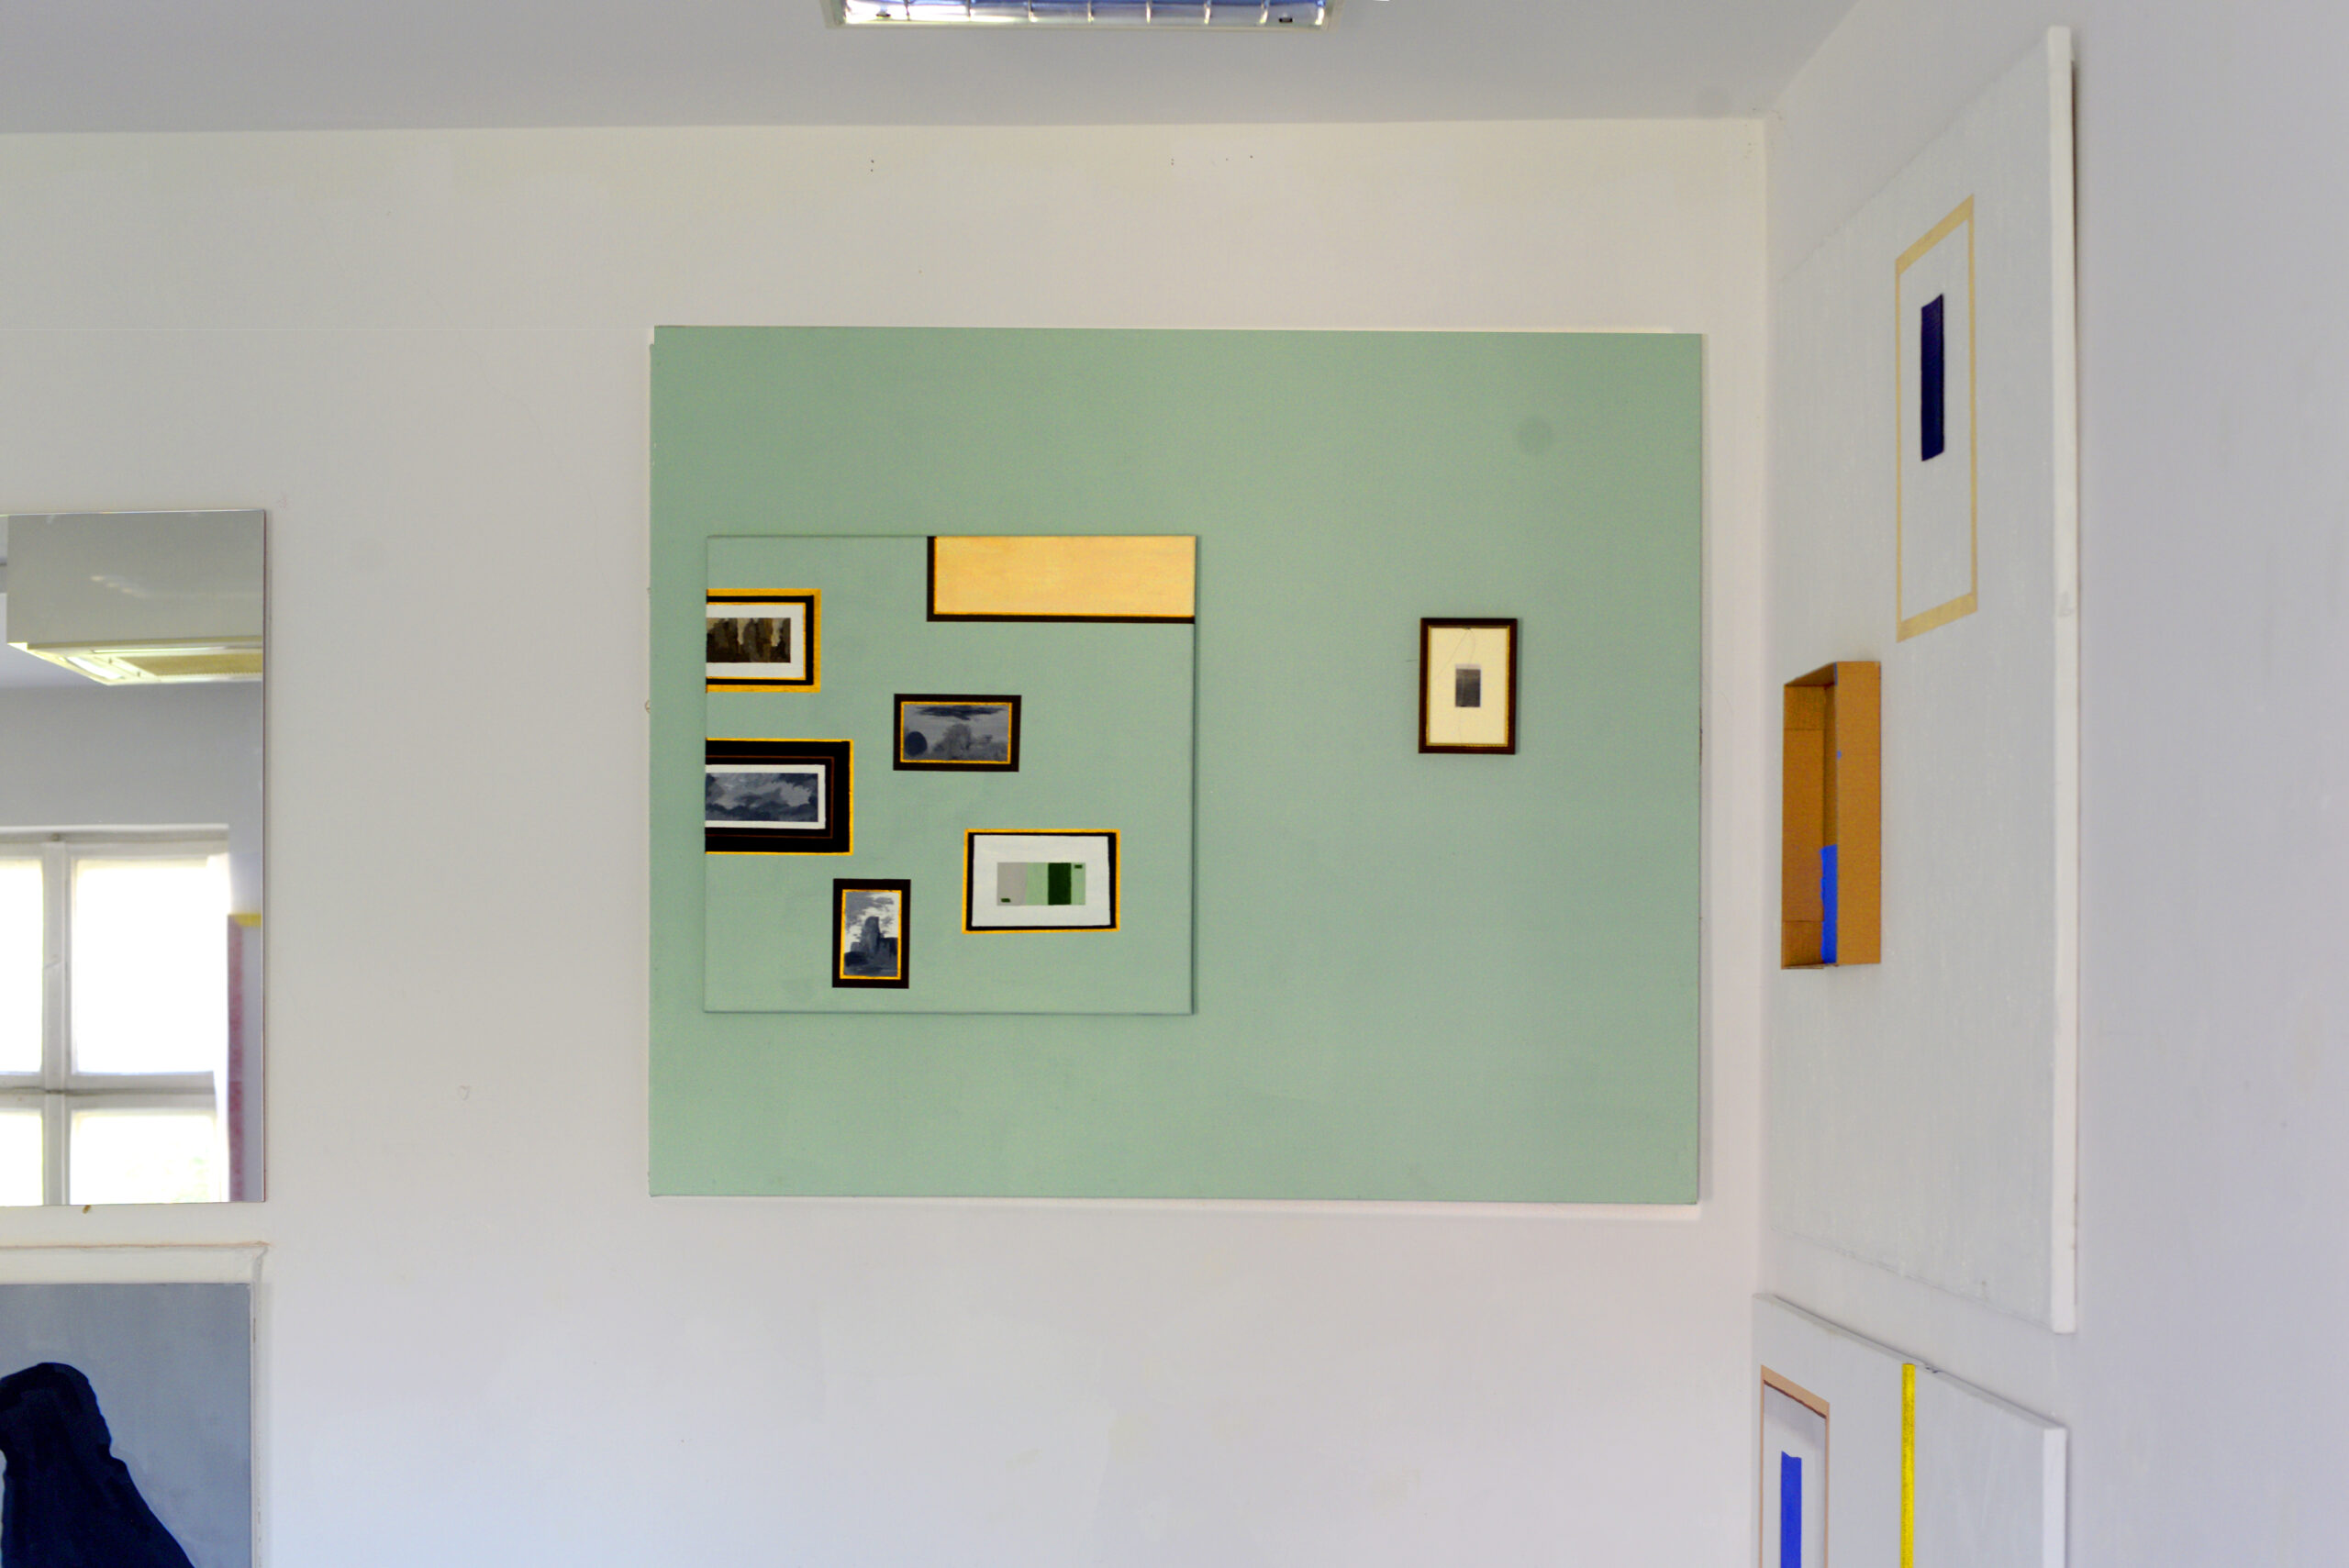 Obraz przedstawia zieloną ścianę z zawieszonymi na niej oprawionymi fotografiami.